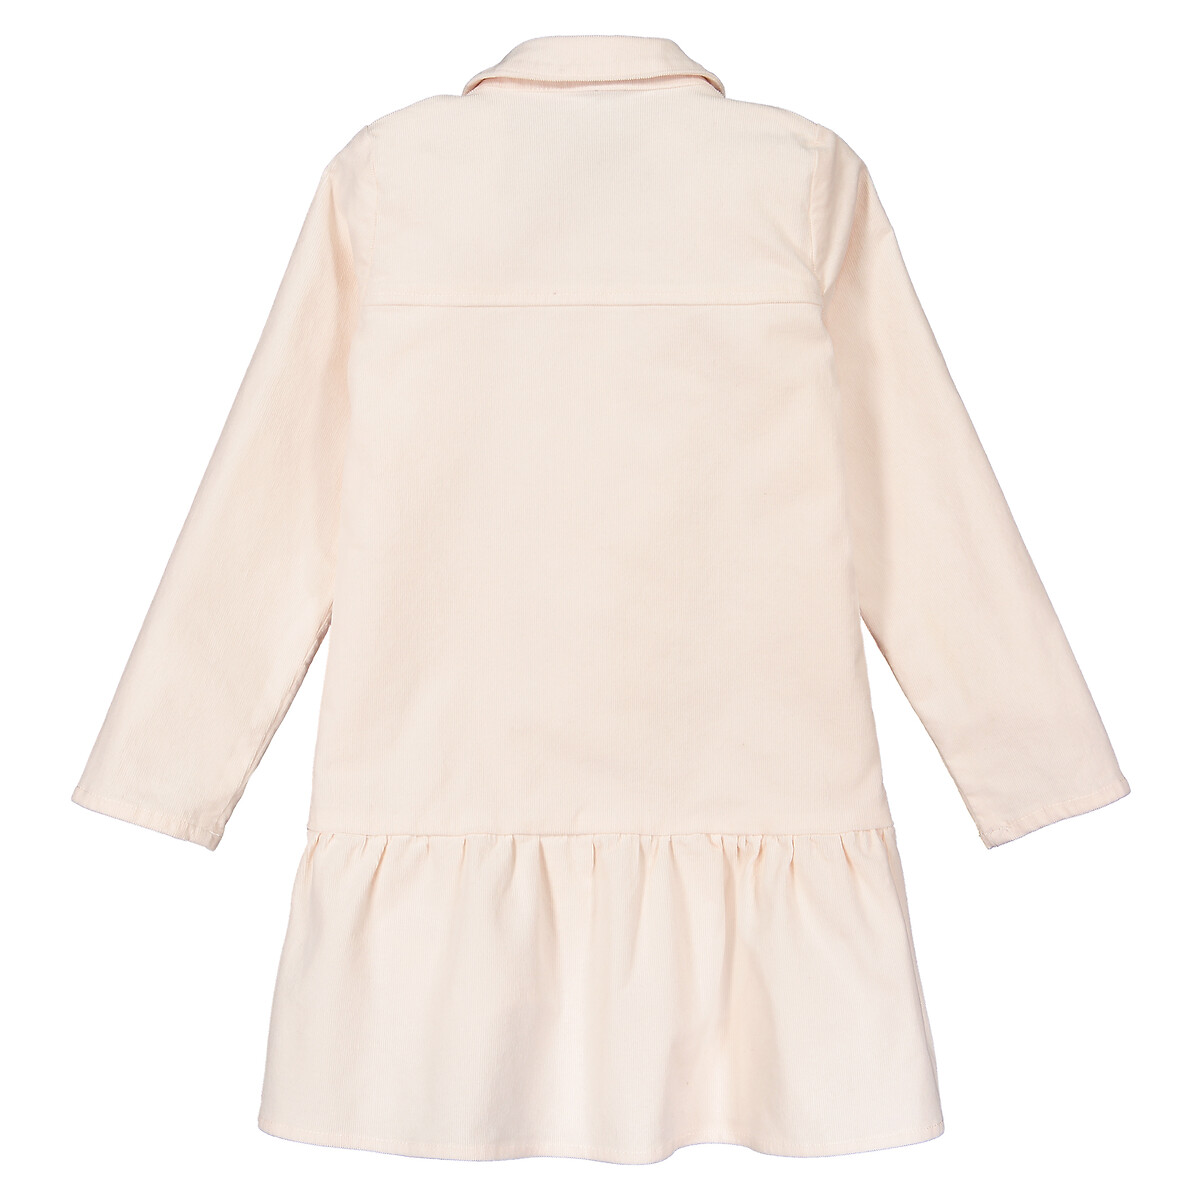 Платье LaRedoute С длинными рукавами из велюра 3-12 лет 8 лет - 126 см розовый, размер 8 лет - 126 см - фото 4